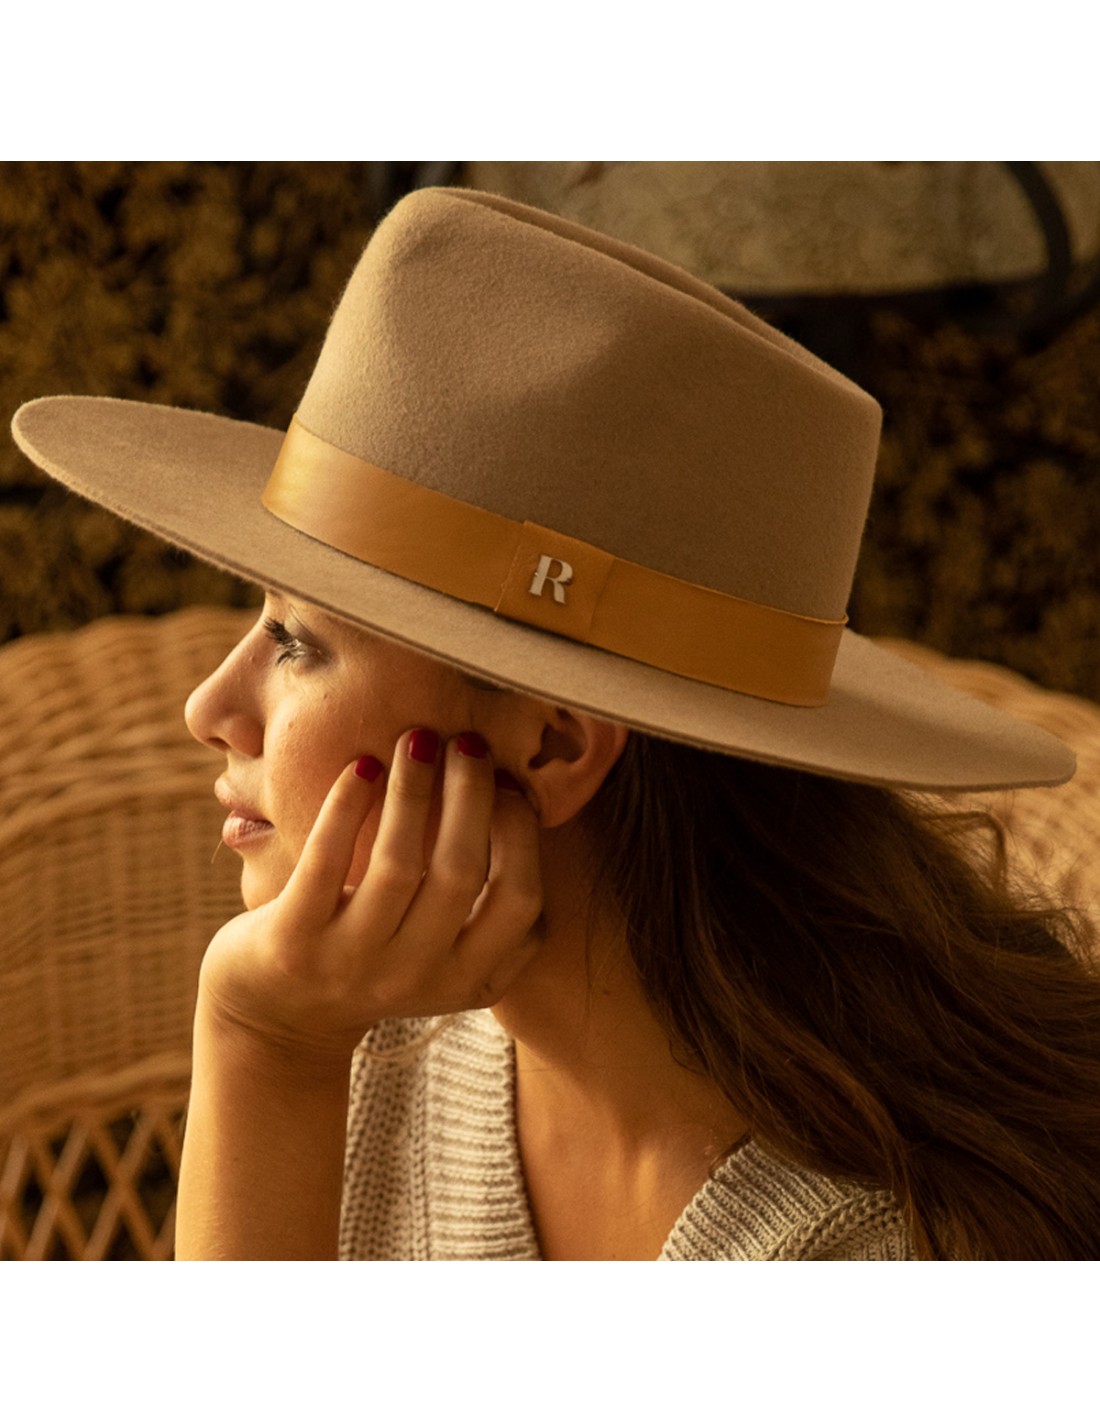 Wollfilz-Fedora-Hut in der Camel Farbe Denver kaufen - Raceu Hats